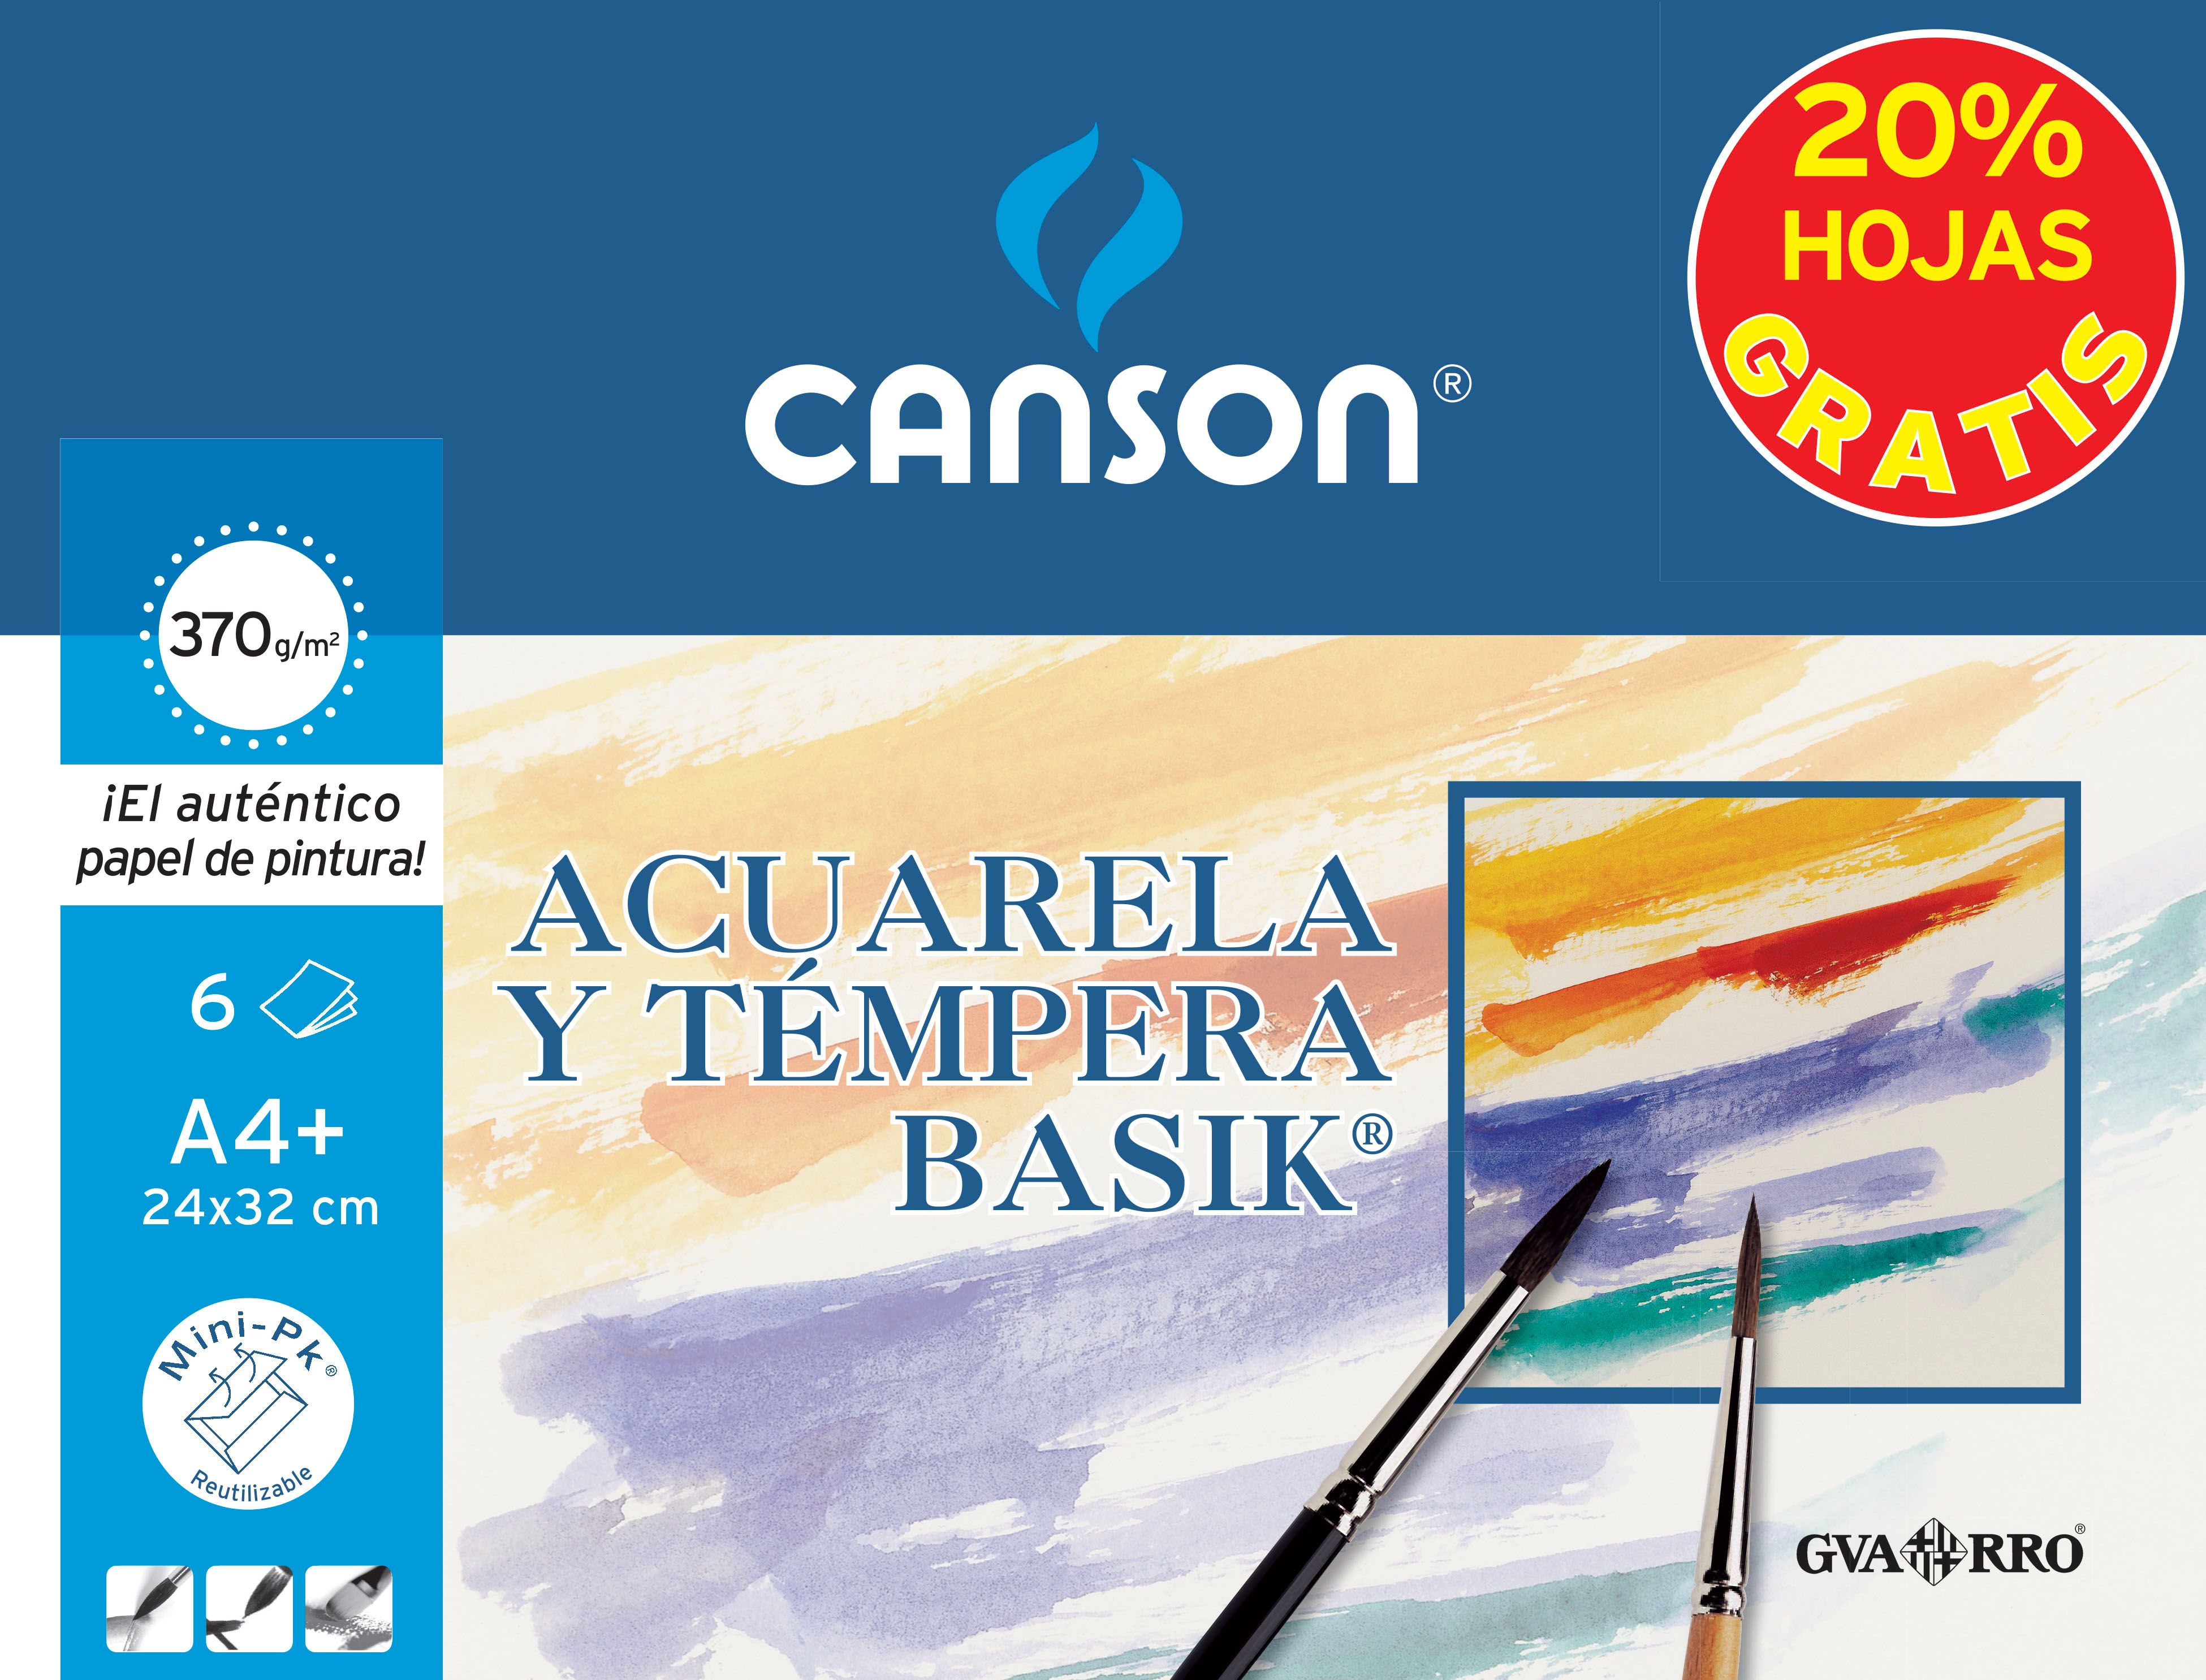 Canson Minipack Promo 6 Feuilles Aquarelle Basik - 24x32 - 370g - 20% de Feuilles Offertes - Coloris Blanc